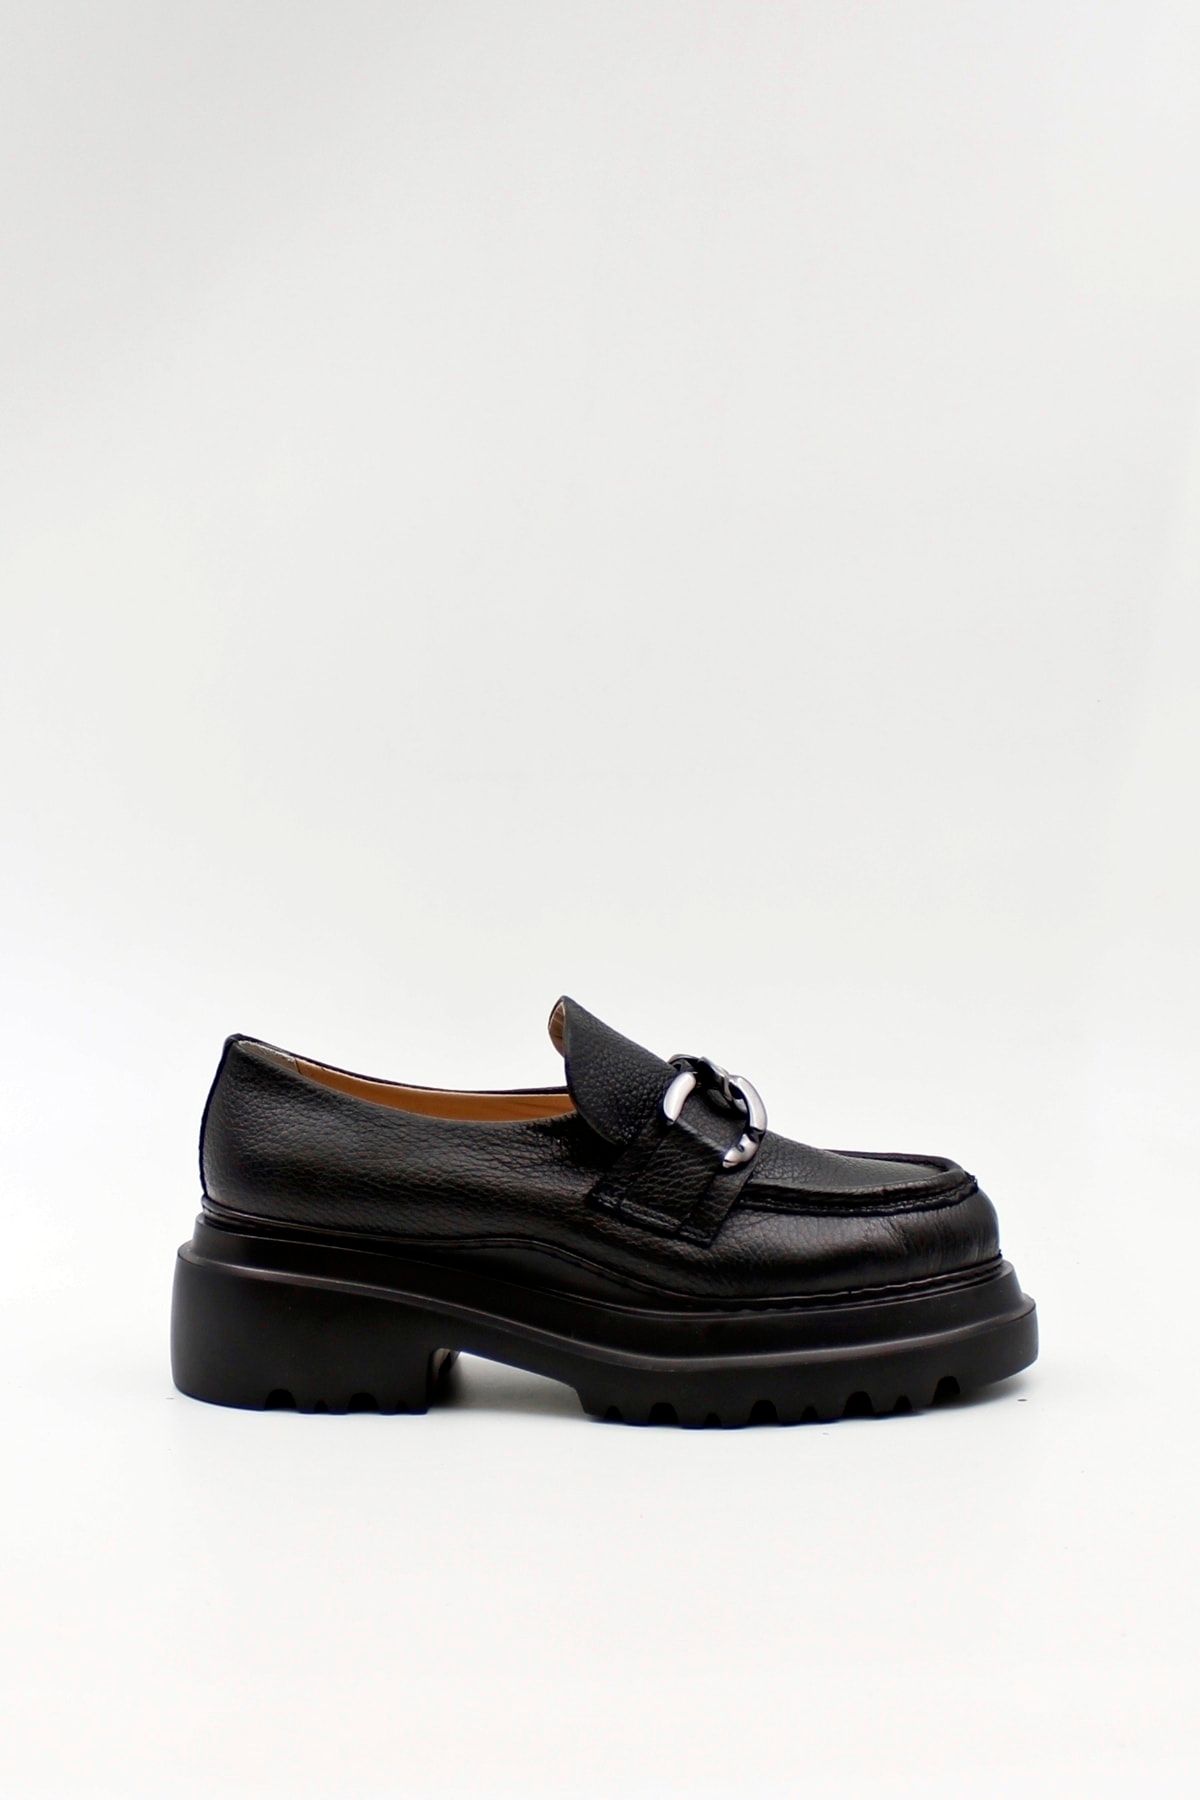 West To West Kadın Hakiki Deri Siyah Zincirli Kalın Kabanlı Loafer Ayakkabı